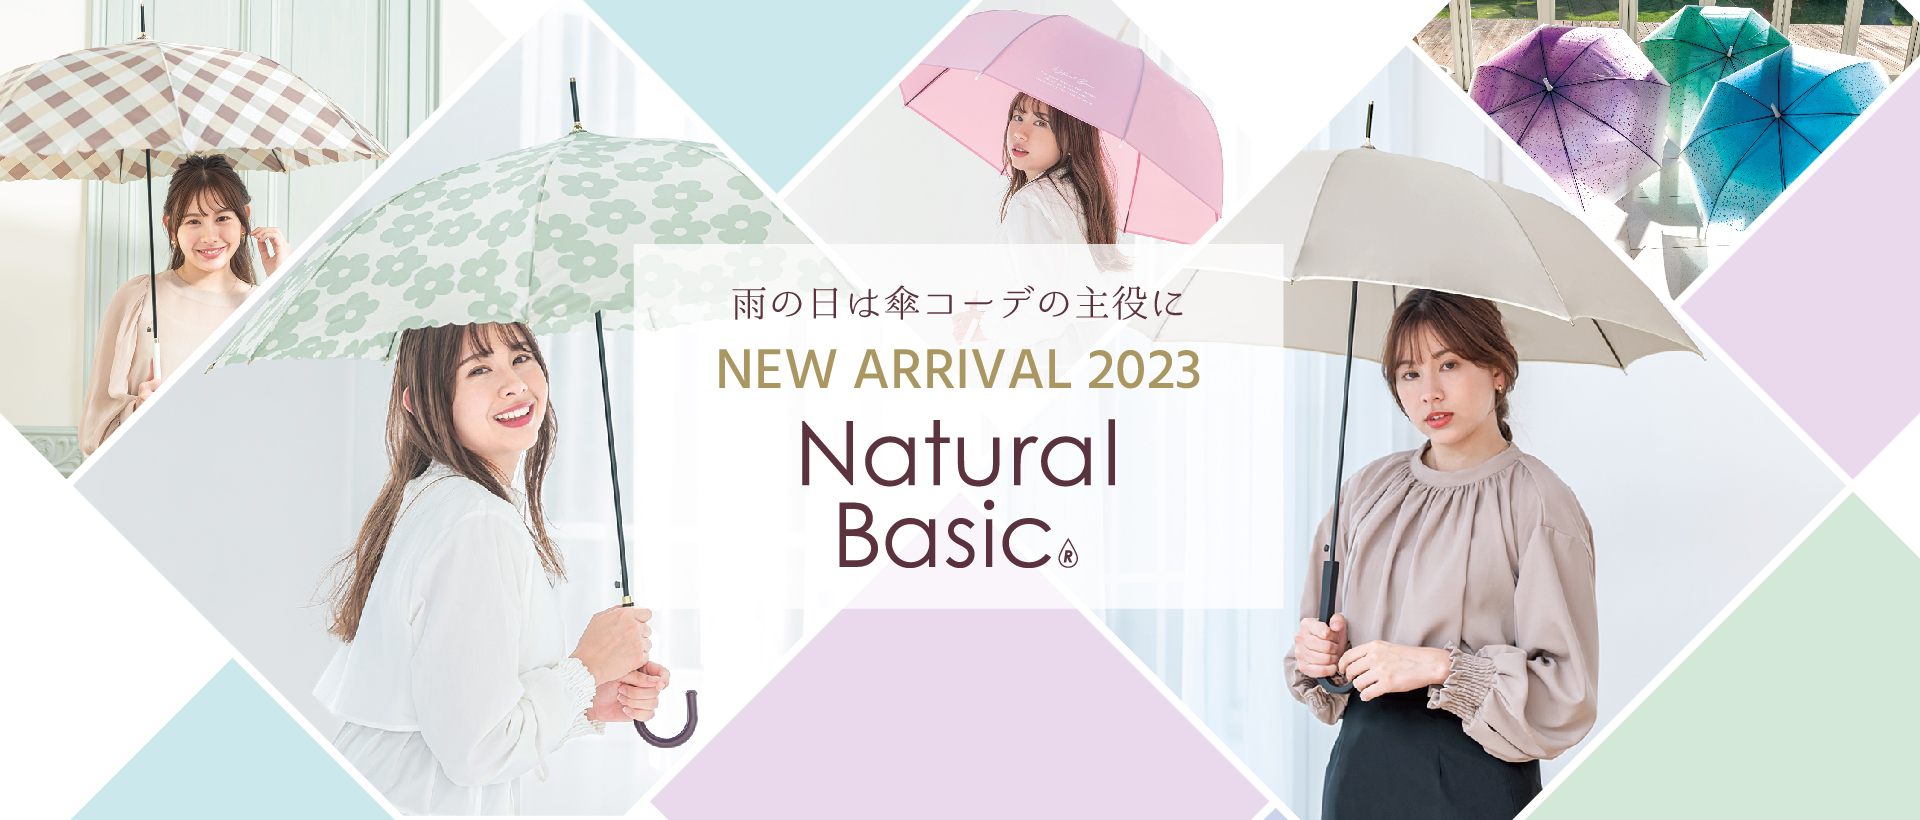 Natural Basic